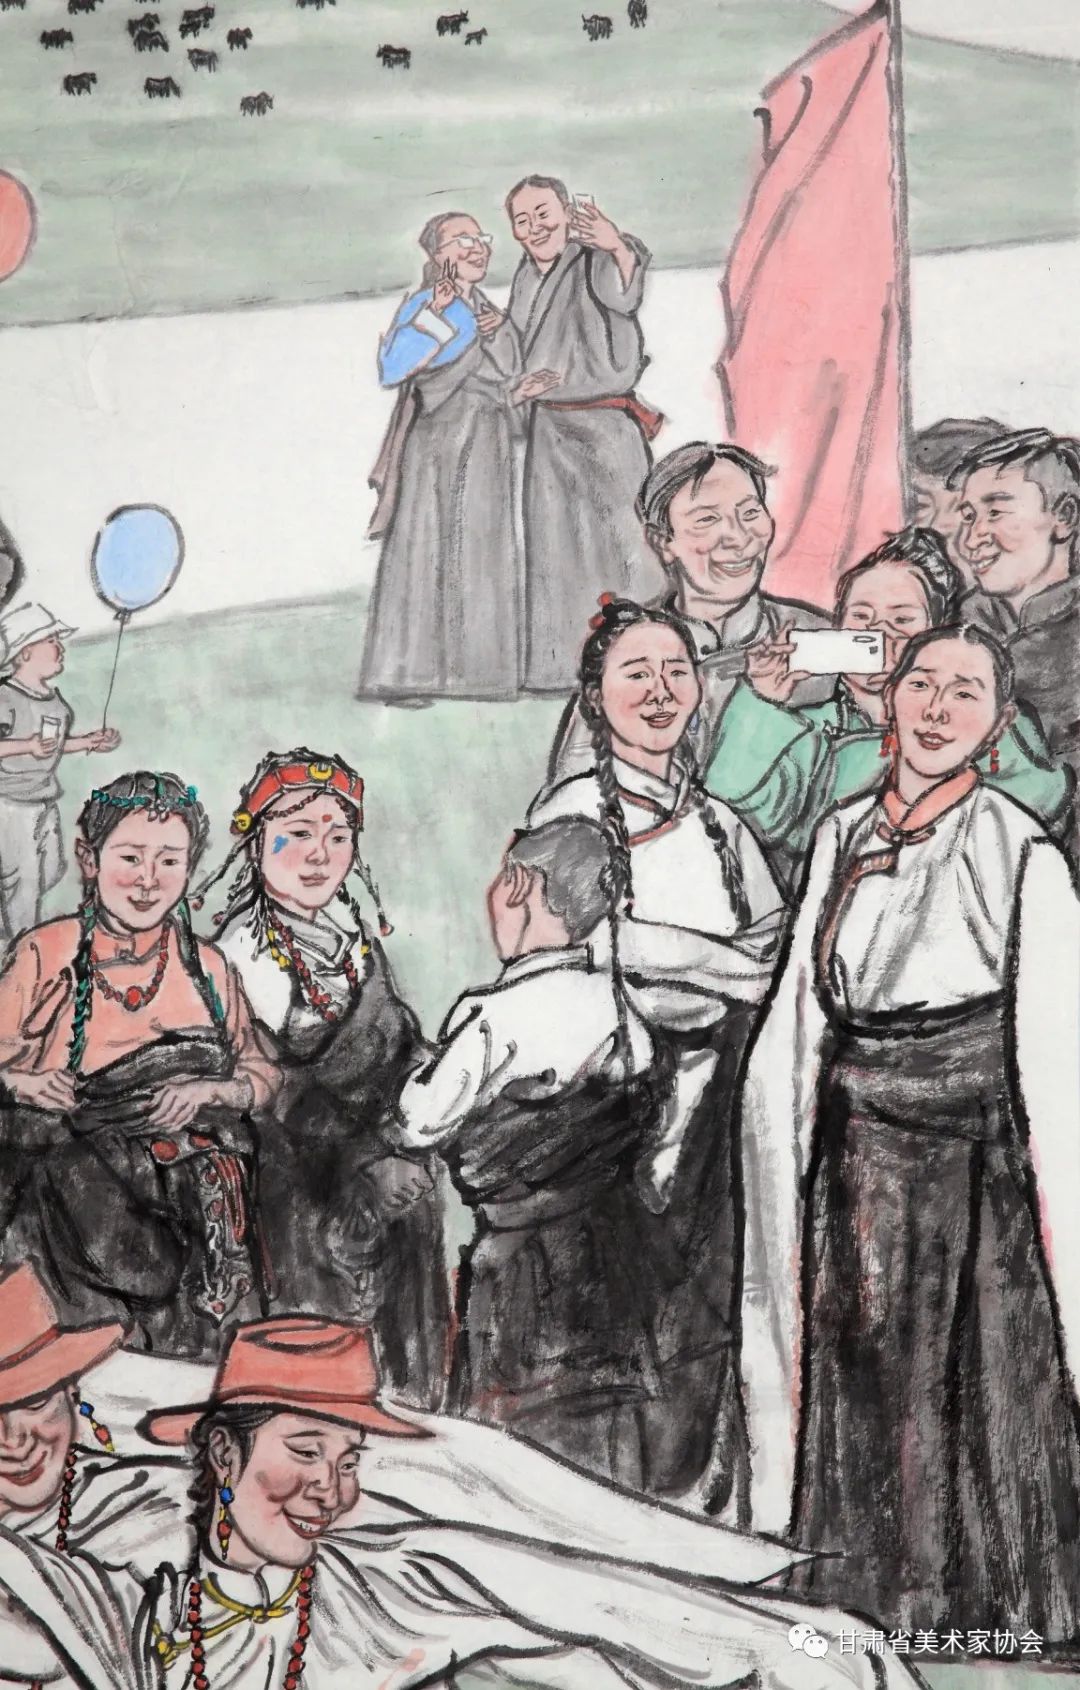 热情奔放 博爱圣洁——著名画家范文阳《美好家园》展现藏族人民新时代美好生活